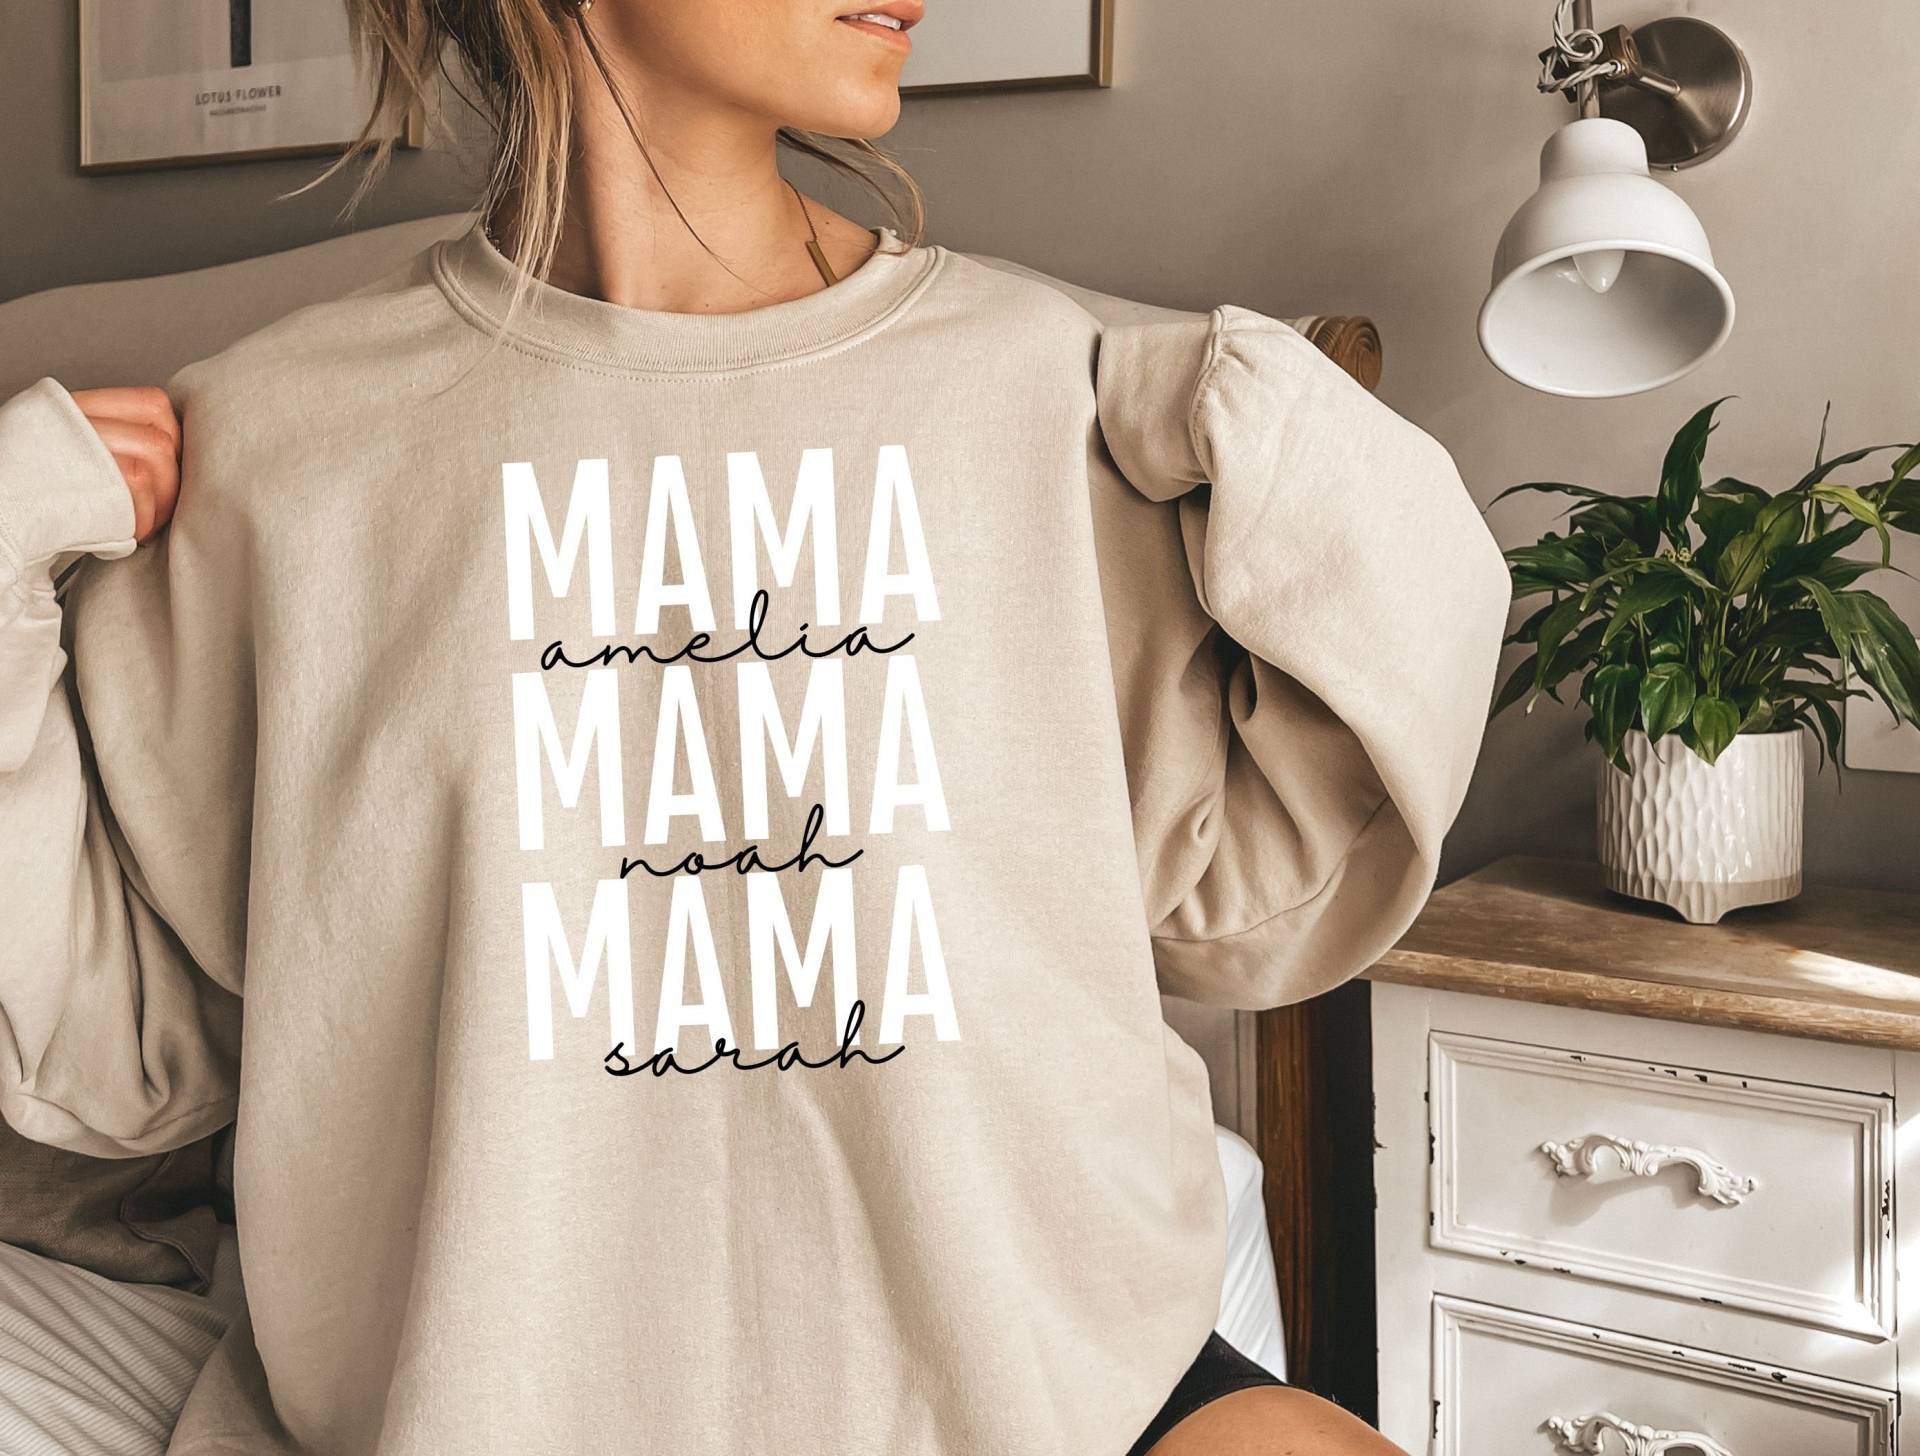 Personalisiertes Mama Sweatshirt Personalisiert Mit Dem Namen/Den Namen Deines Kindes Mama Geschenk Für Mama, Tolles Neues von EnchantedLilyDesign